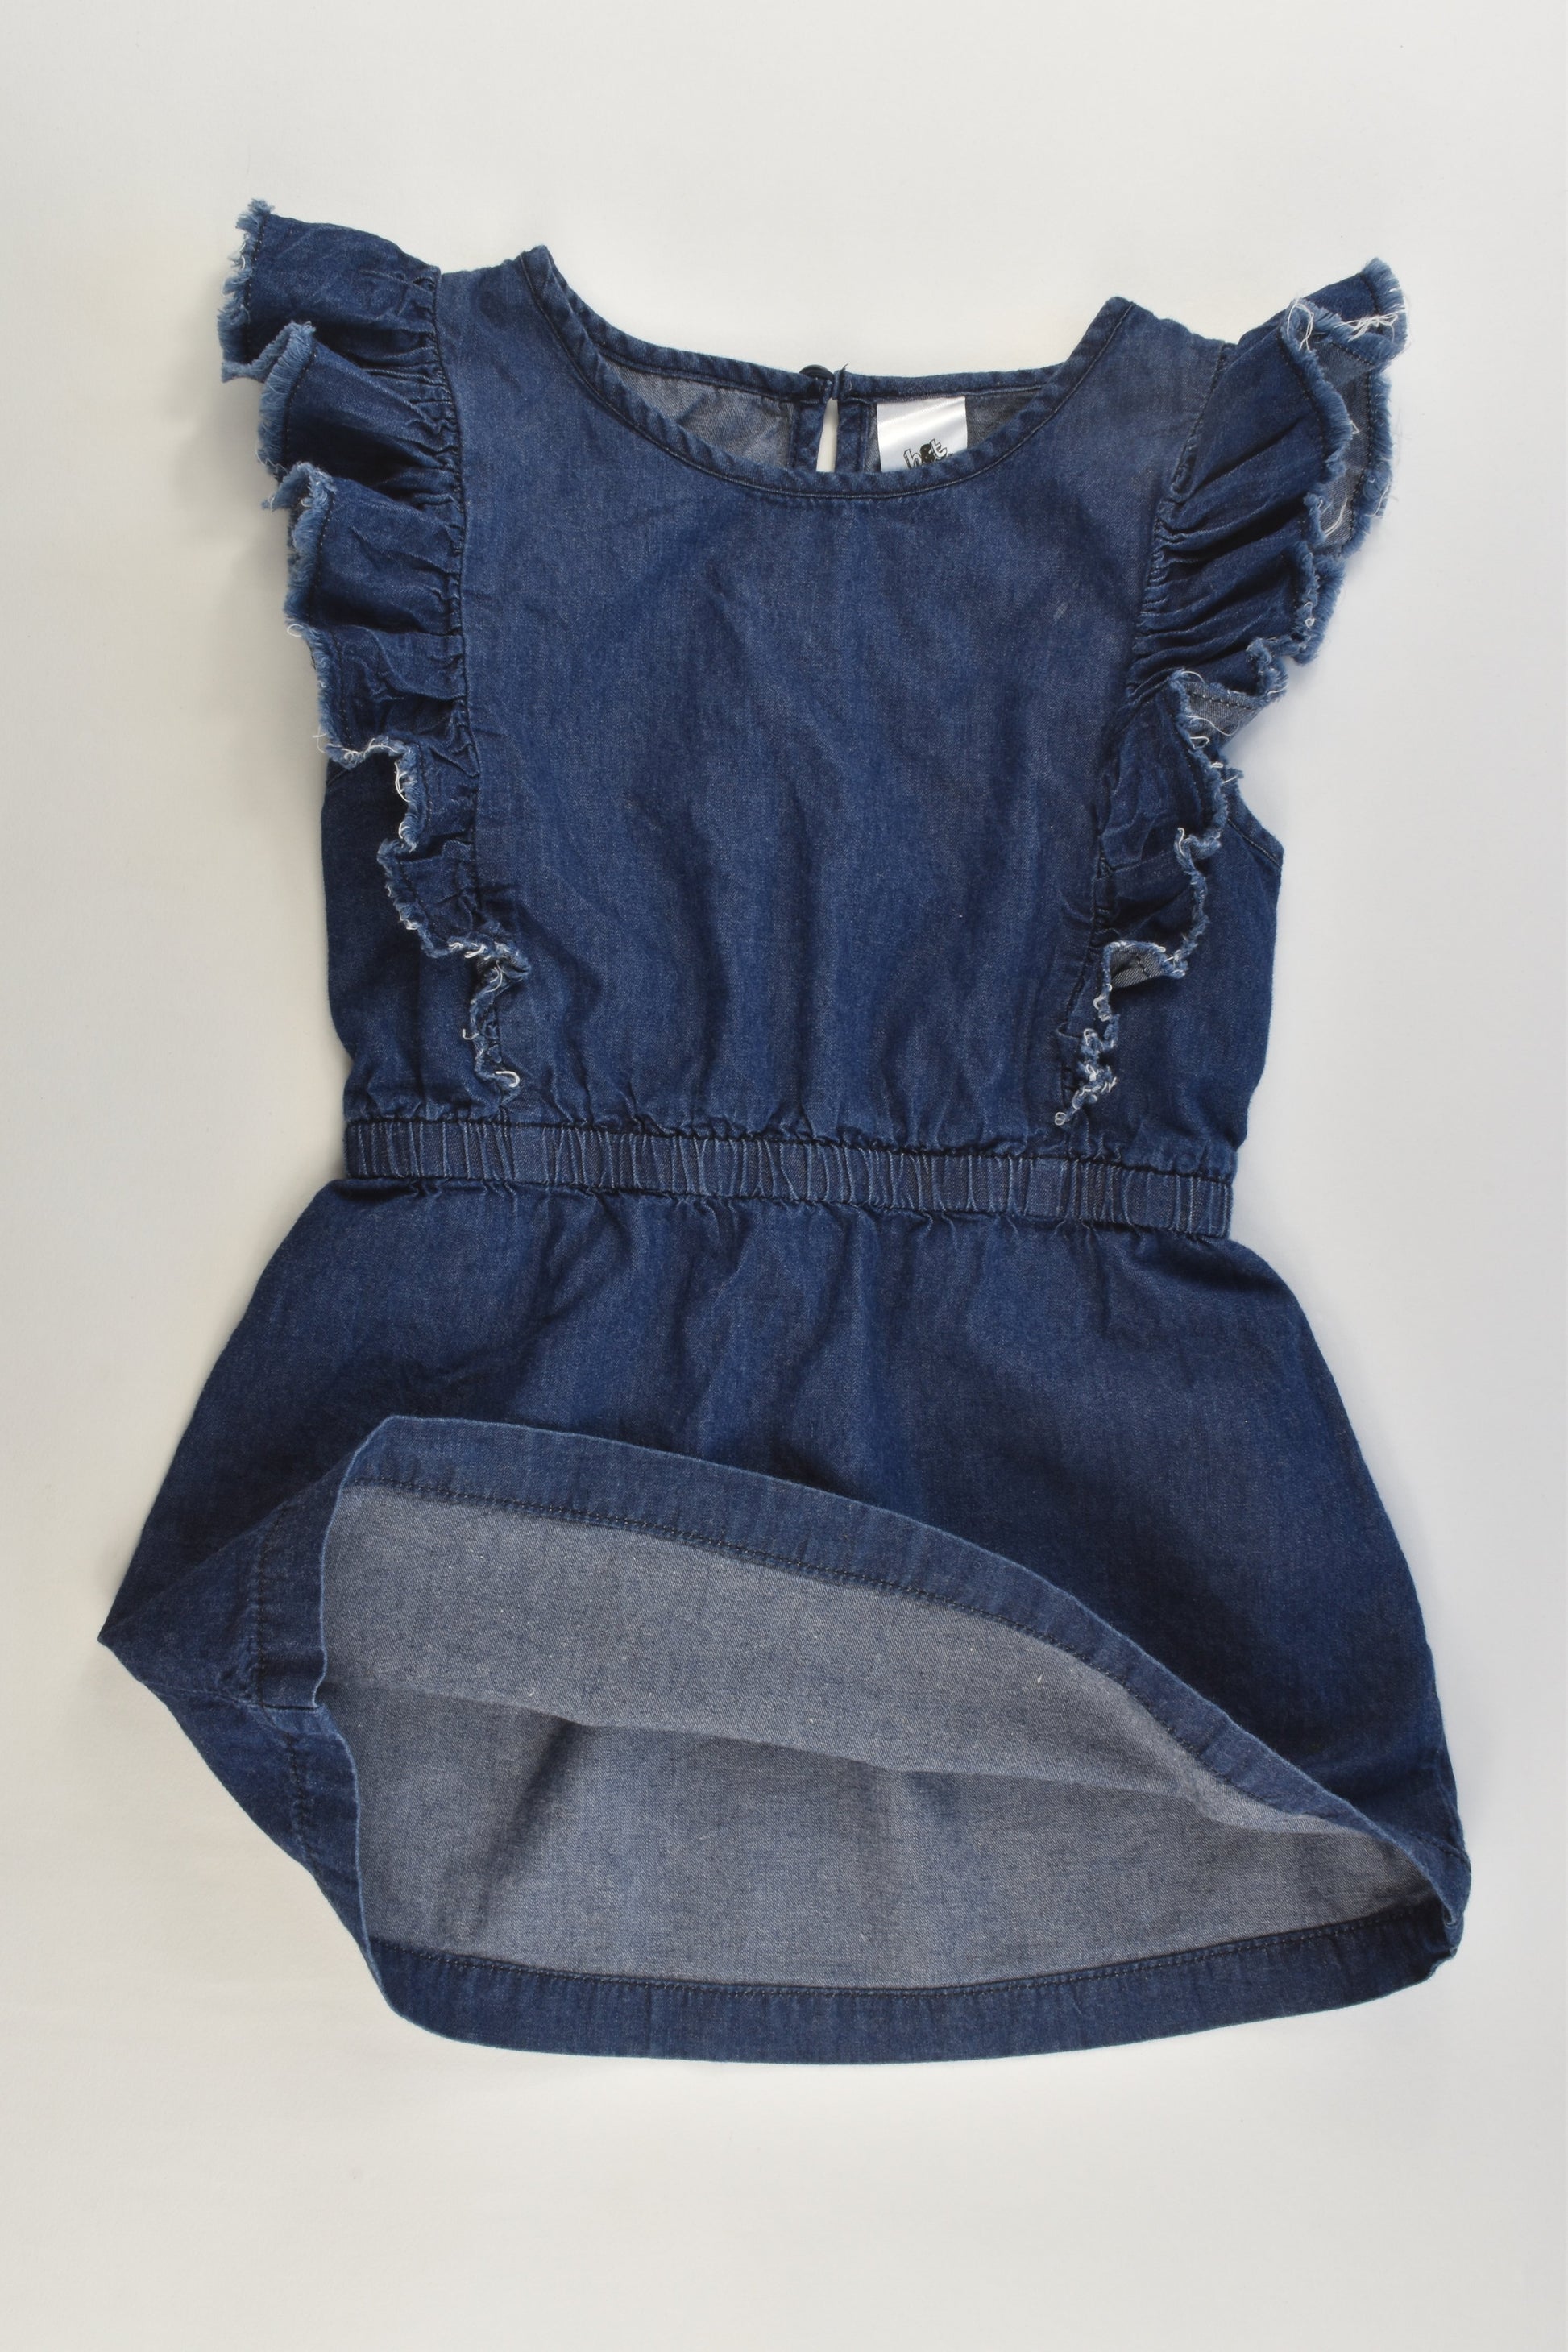 H&T Size 2 (92 cm) Lightweight Ruffle Sleeves Denim Dress